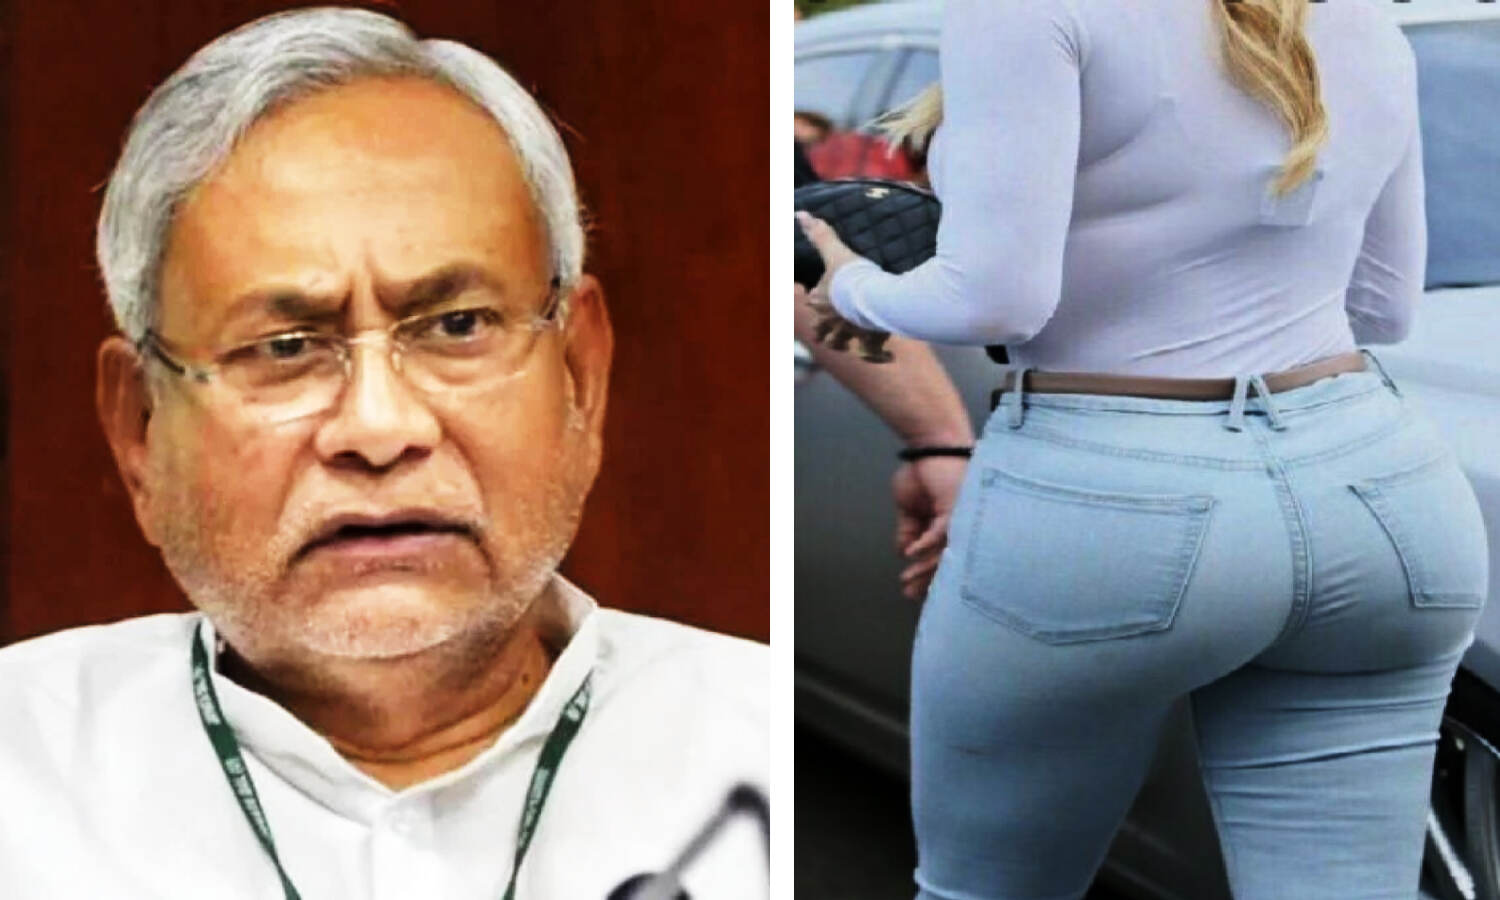 Gaya Crime News : साहब ने कहा कि टाइट जींस-टीशर्ट में बड़ी अच्छी लगती हो और फिर पीछे से आकर पकड़ लिया, CM नीतीश कुमार को भेजी चिट्ठी-मचा हड़कंप